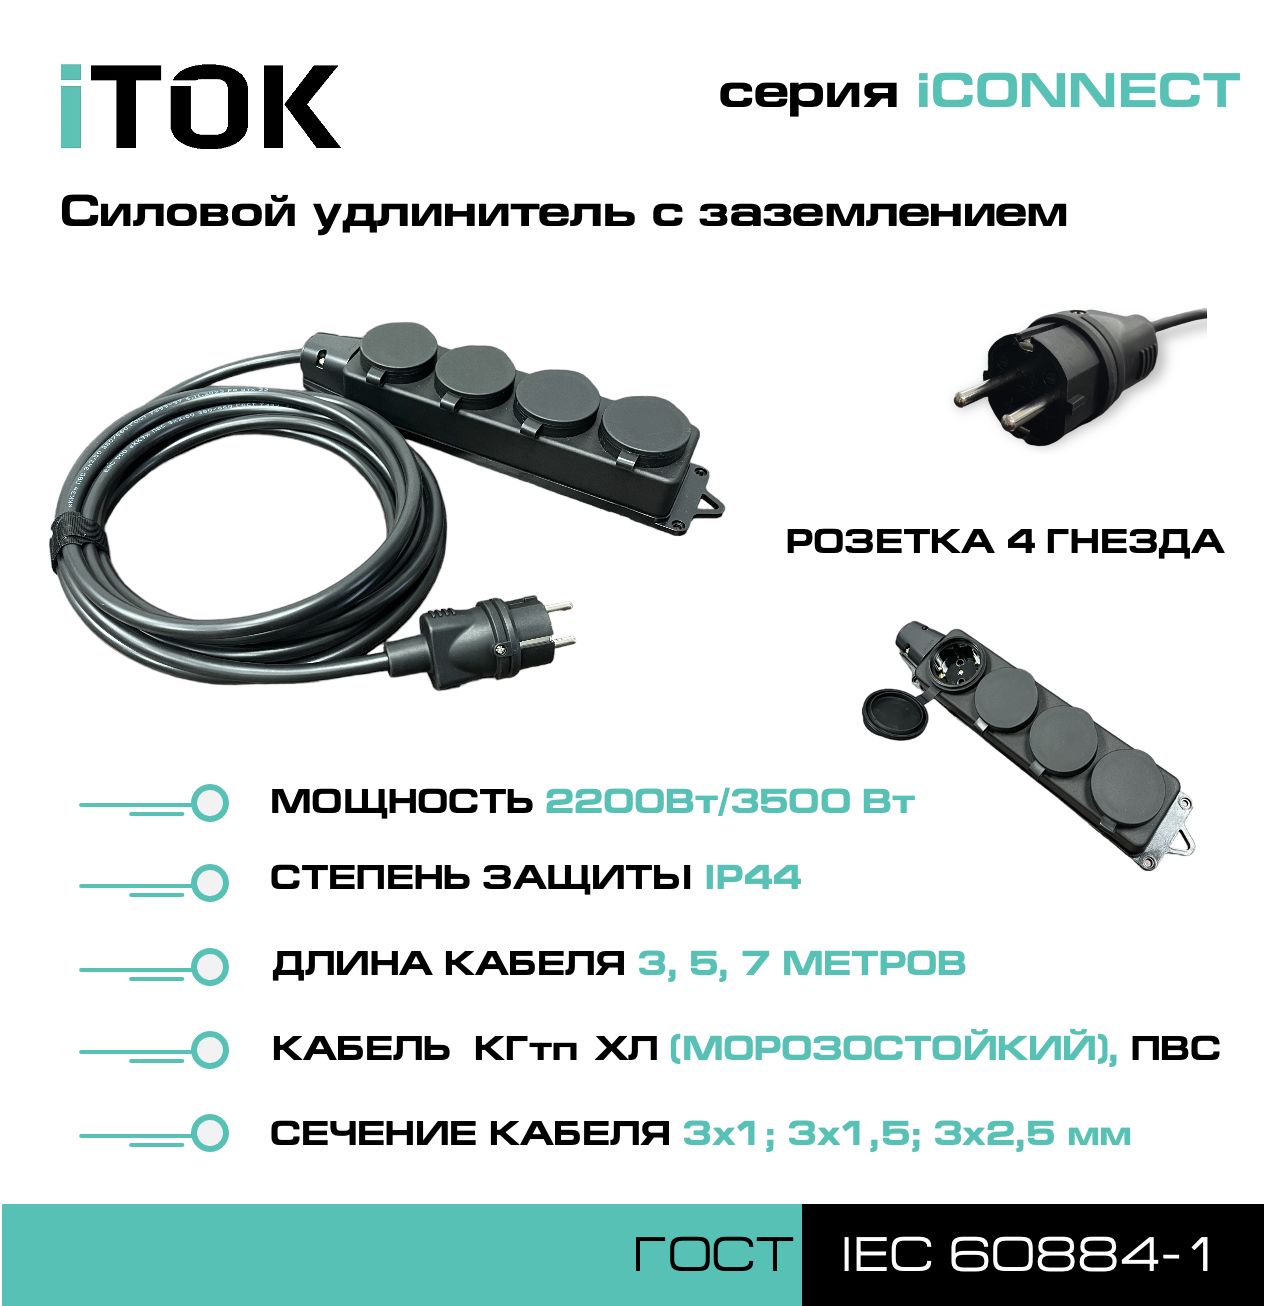 Удлинитель с заземлением серии iTOK iCONNECT ПВС 3х1,5 мм 4 гнезда IP44 5 м